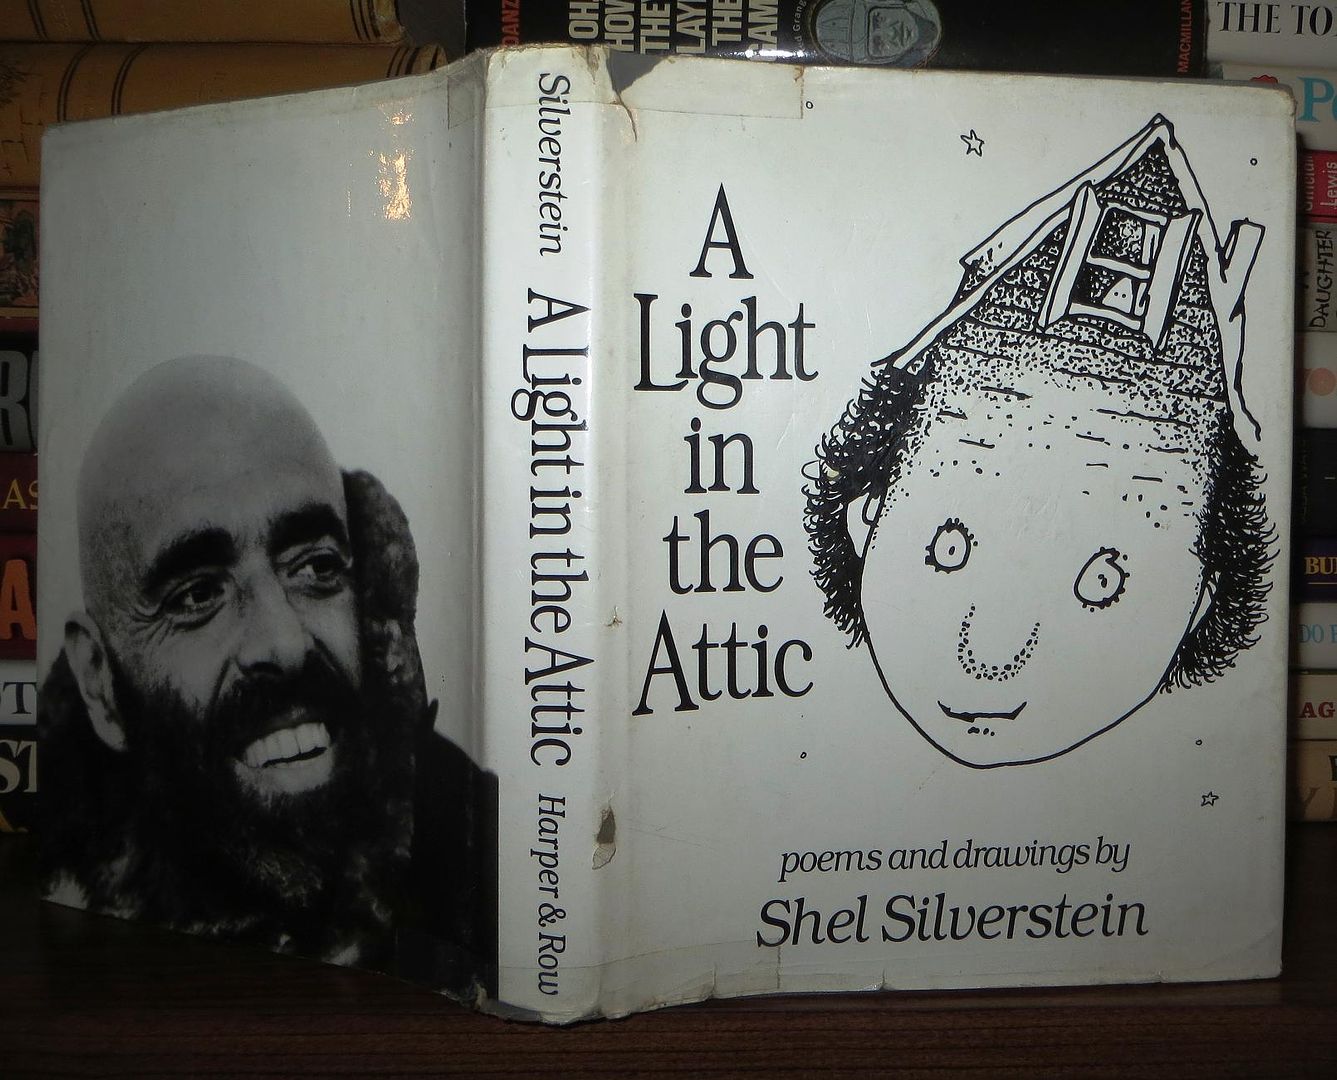 SILVERSTEIN, SHEL - A Light in the Attic